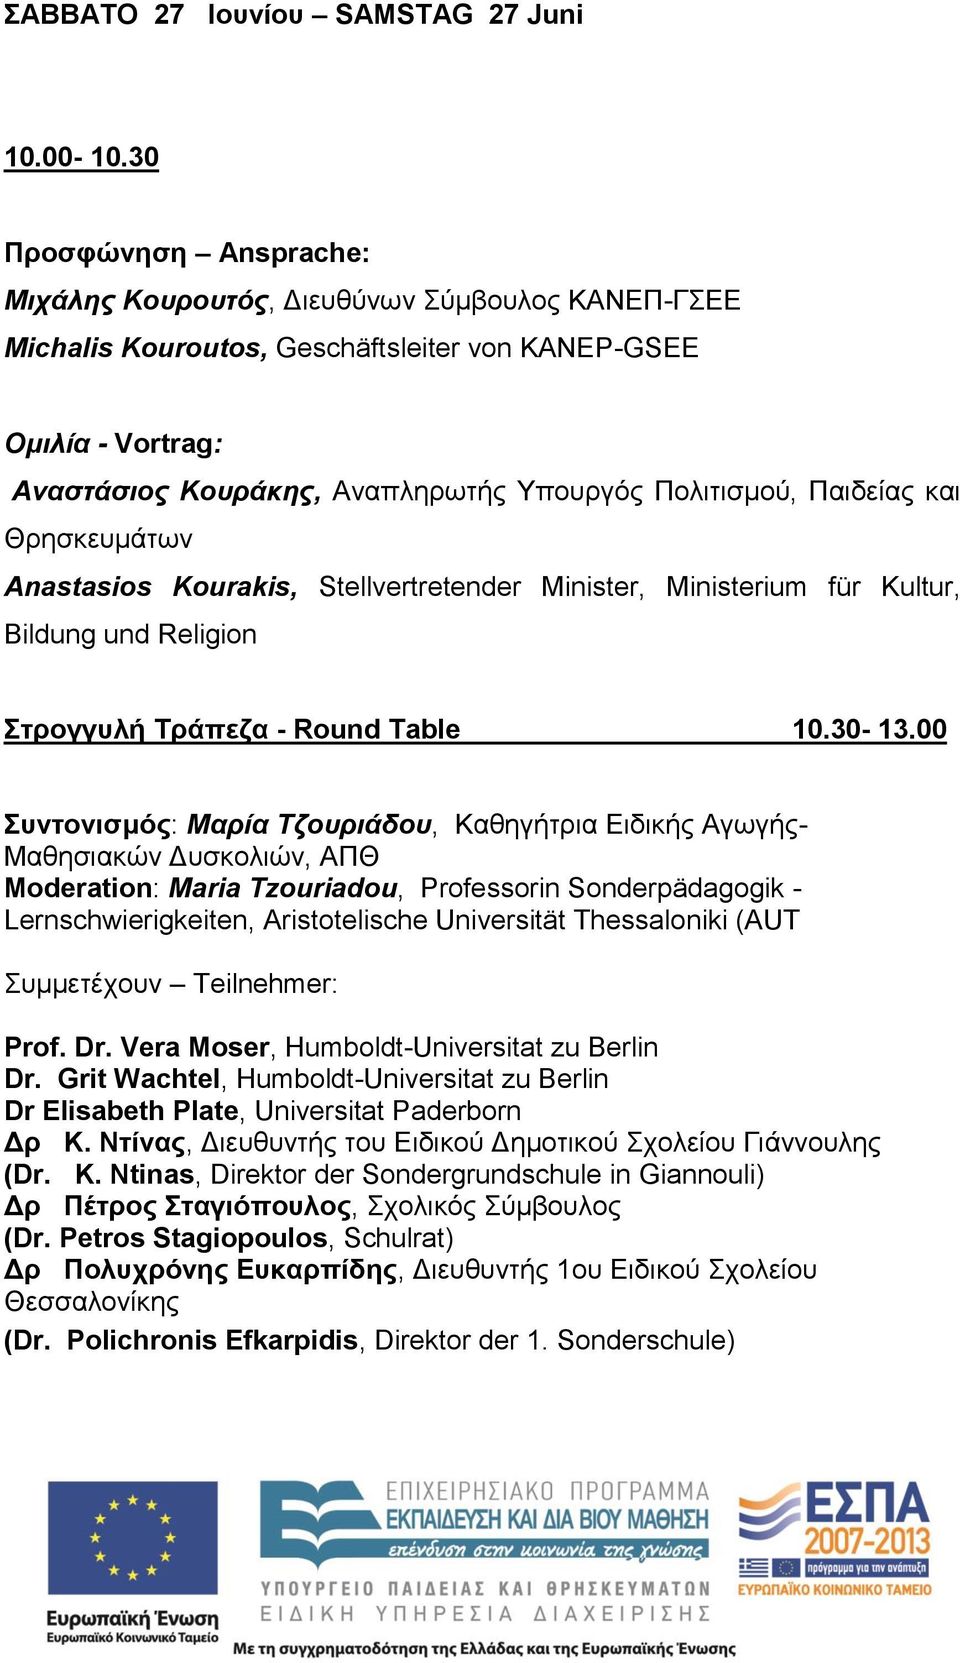 Παιδείας και Θρησκευμάτων Anastasios Kourakis, Stellvertretender Minister, Ministerium für Kultur, Bildung und Religion Στρογγυλή Τράπεζα - Round Table 10.30-13.